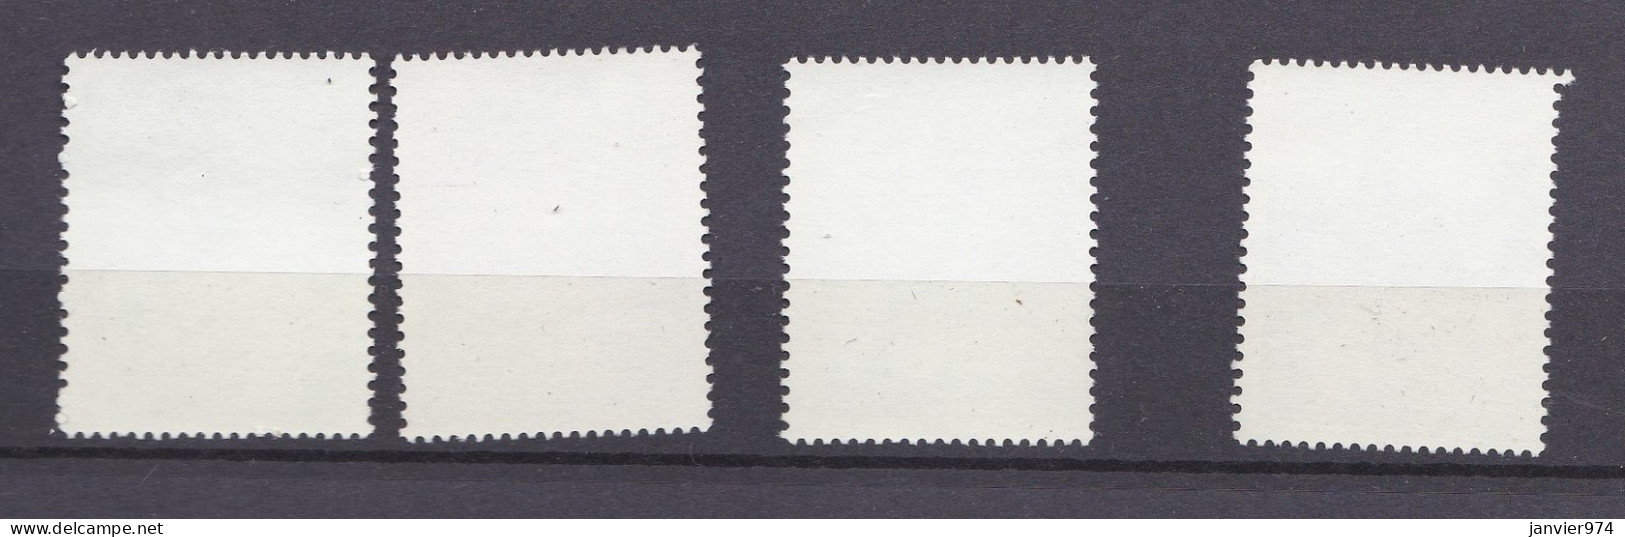 Chine 1976 La Serie Complete  Entretien Des Lignes électriques, 4 Timbres Neufs 1296 à 1299 - Unused Stamps